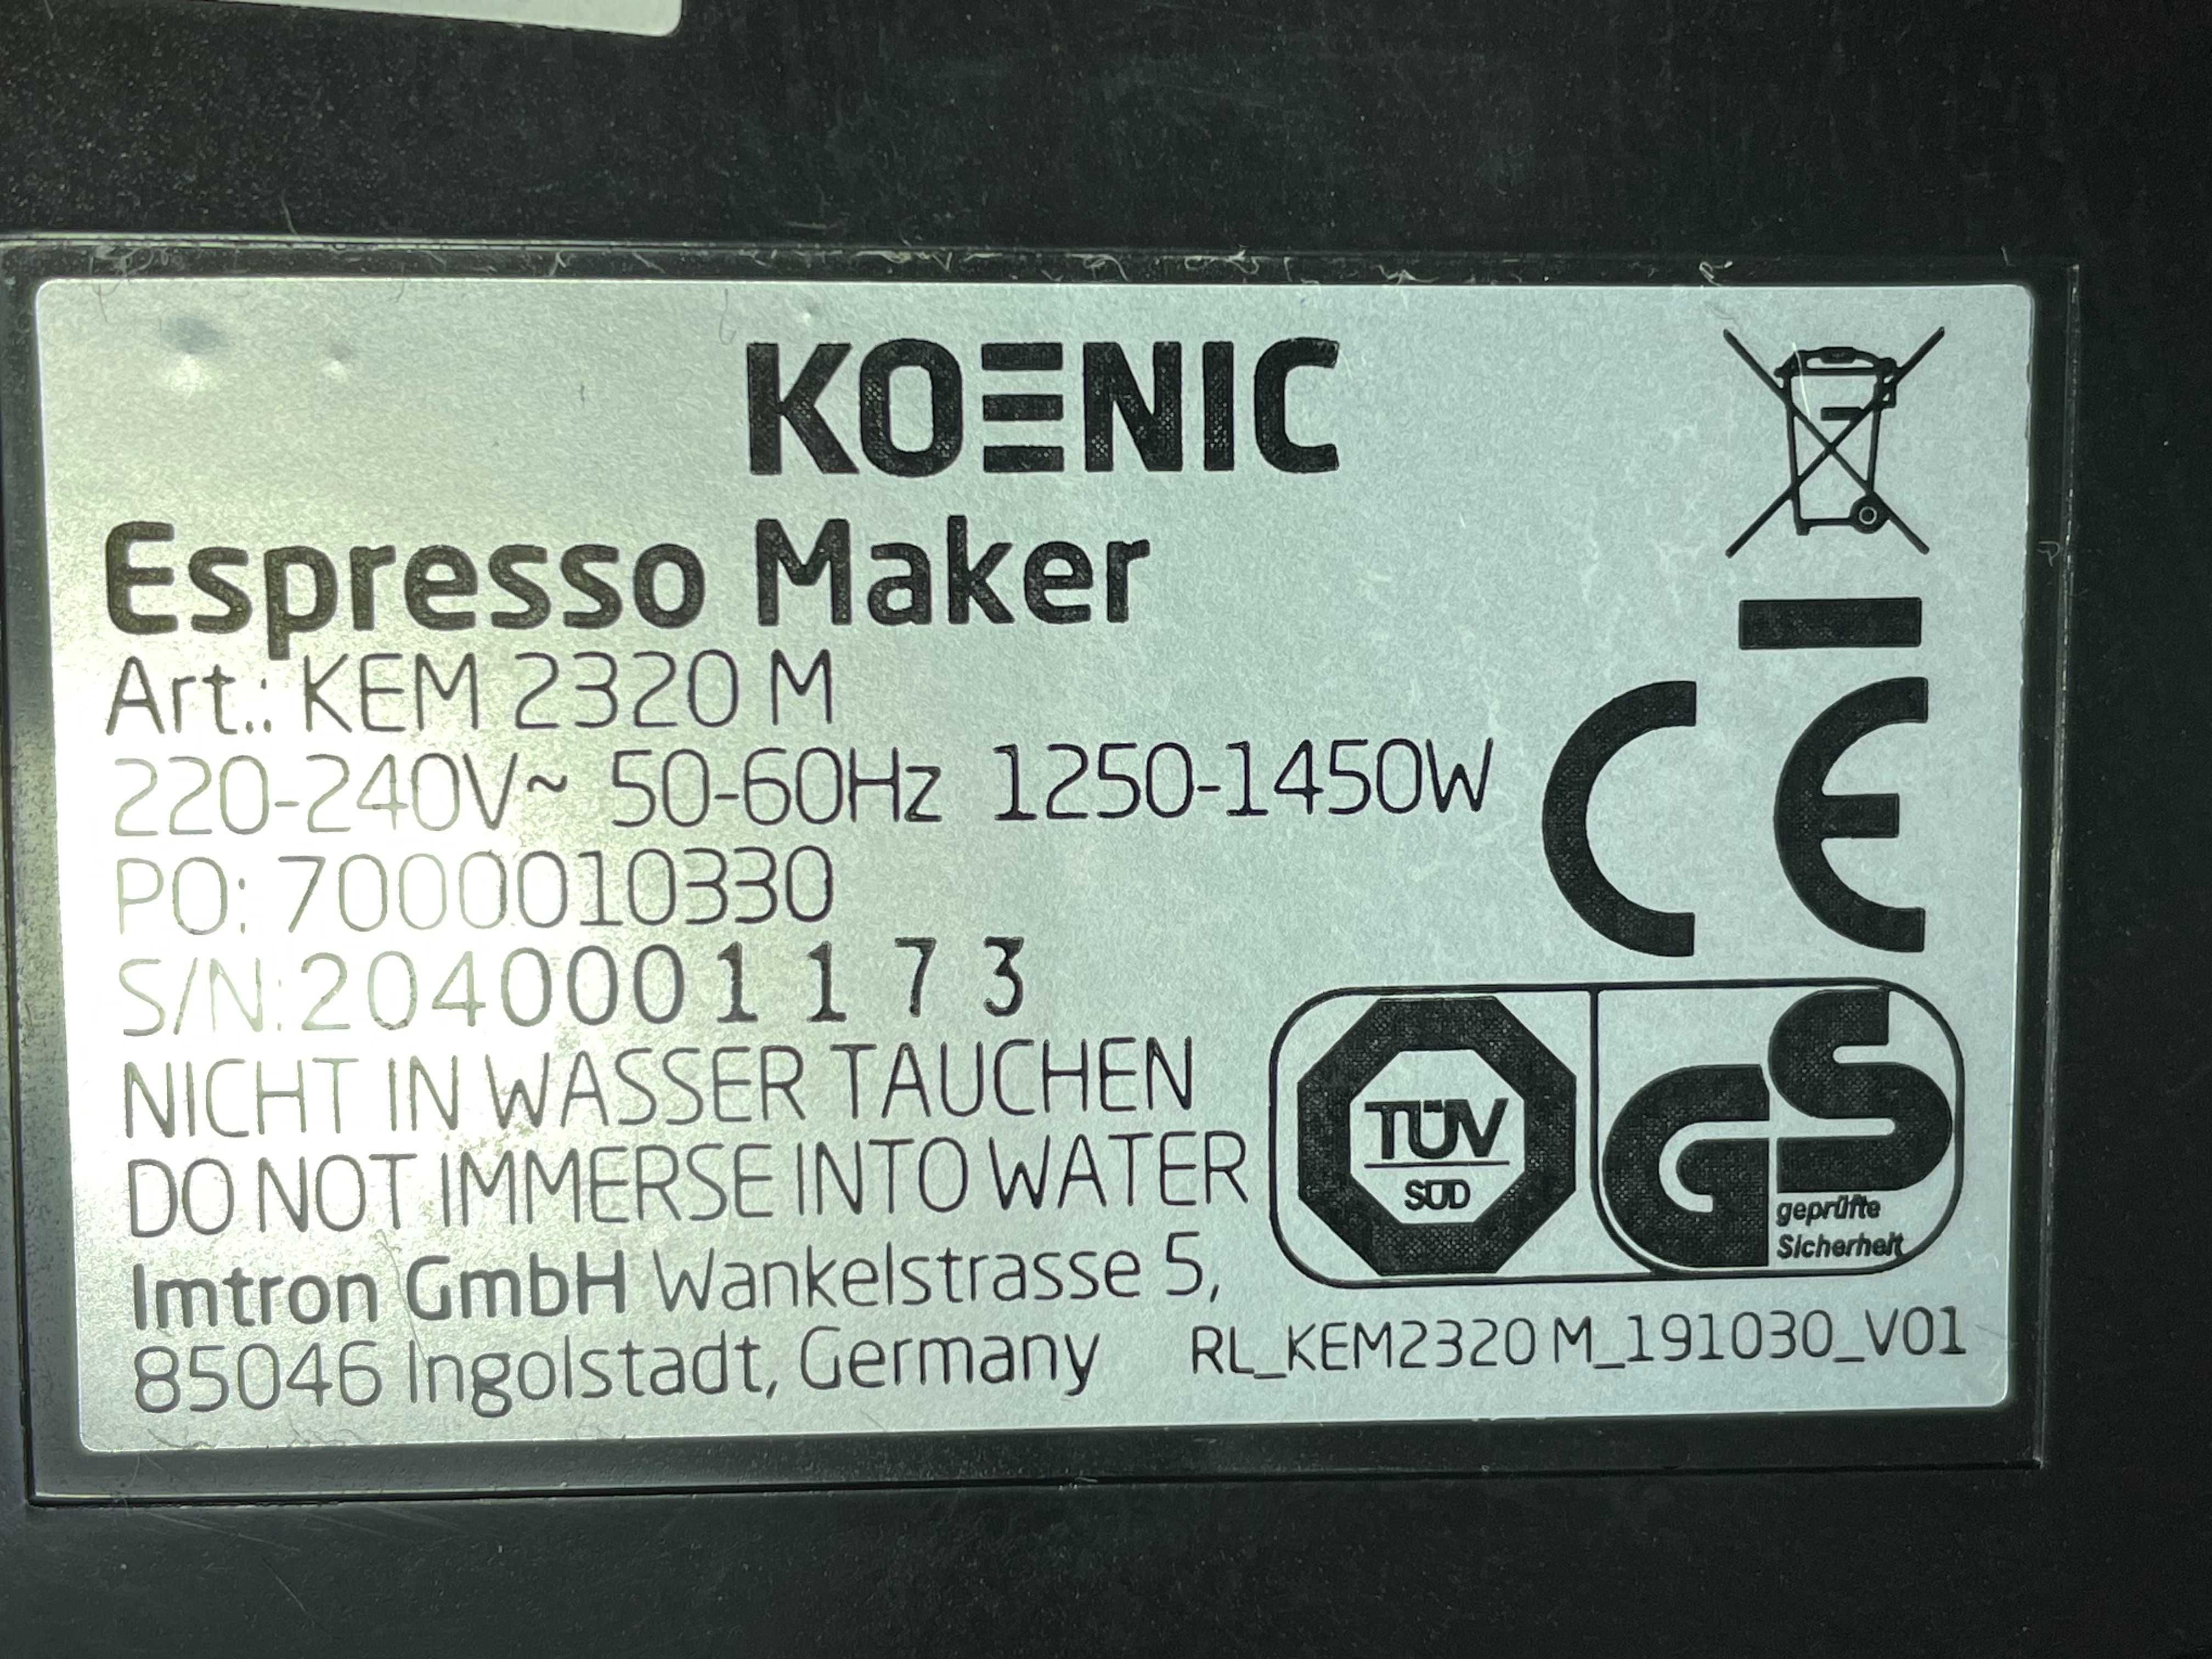 Кофеварка KOENIC Espresso Maker, KEM 2320 M, GERMANY, 1450 W